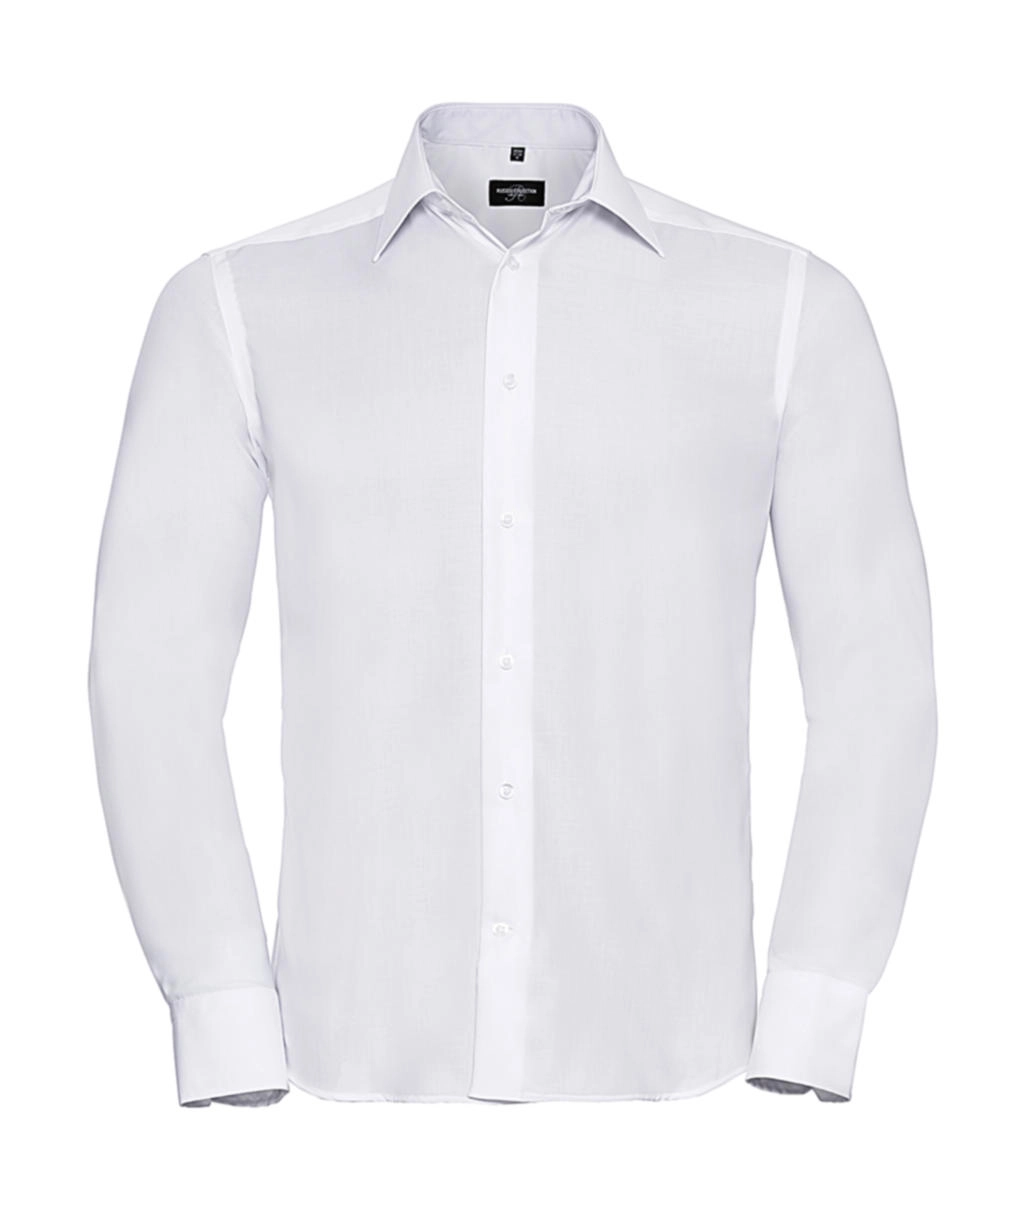 Tailored Ultimate Non-iron Shirt LS zum Besticken und Bedrucken in der Farbe White mit Ihren Logo, Schriftzug oder Motiv.